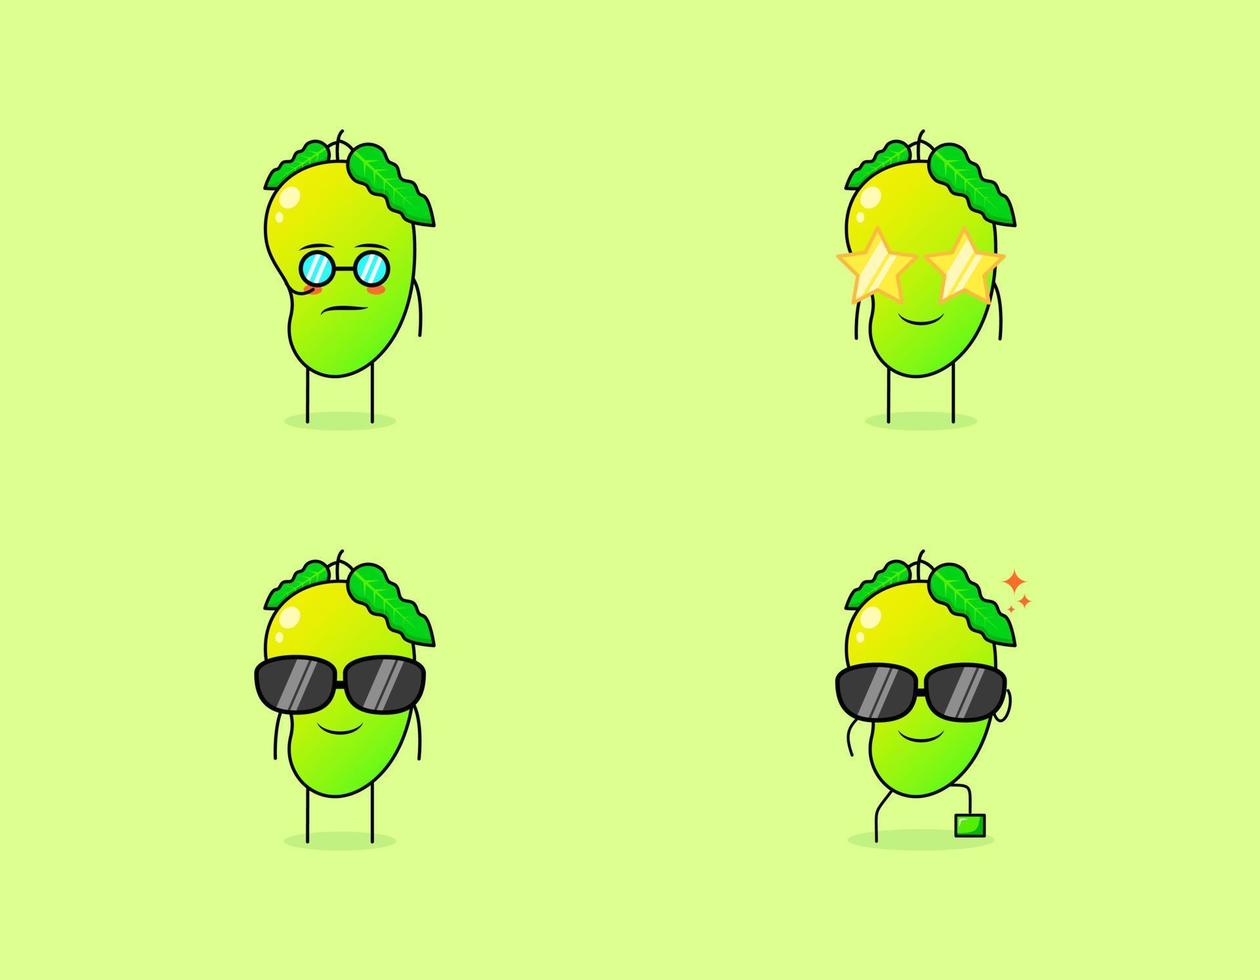 collezione di simpatici personaggi dei cartoni animati di mango con espressione seria, sorriso e occhiali. adatto per emoticon, logo, simbolo e mascotte. come emoticon, adesivi o logo di frutta vettore